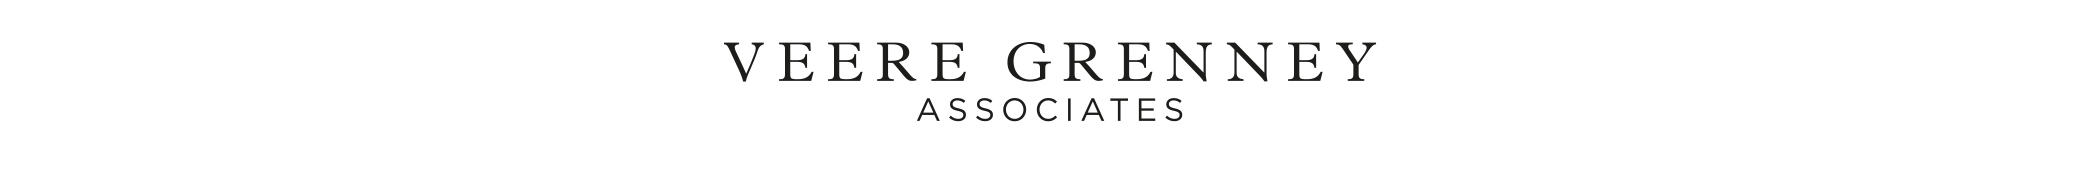 Veere Grenney Associates